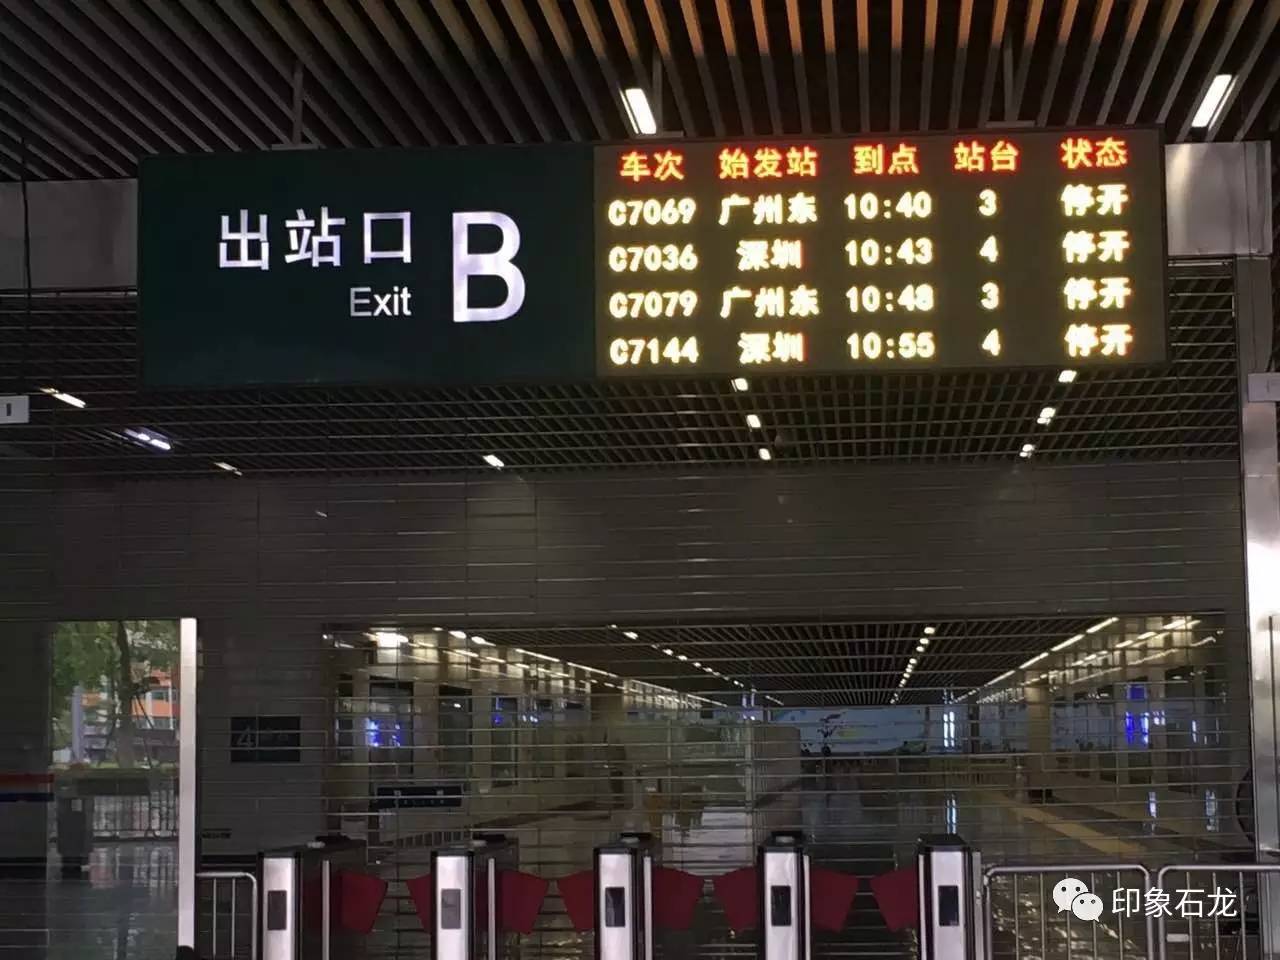 【重要通知】因台风影响,8月23日东莞火车站18趟长途列车停运